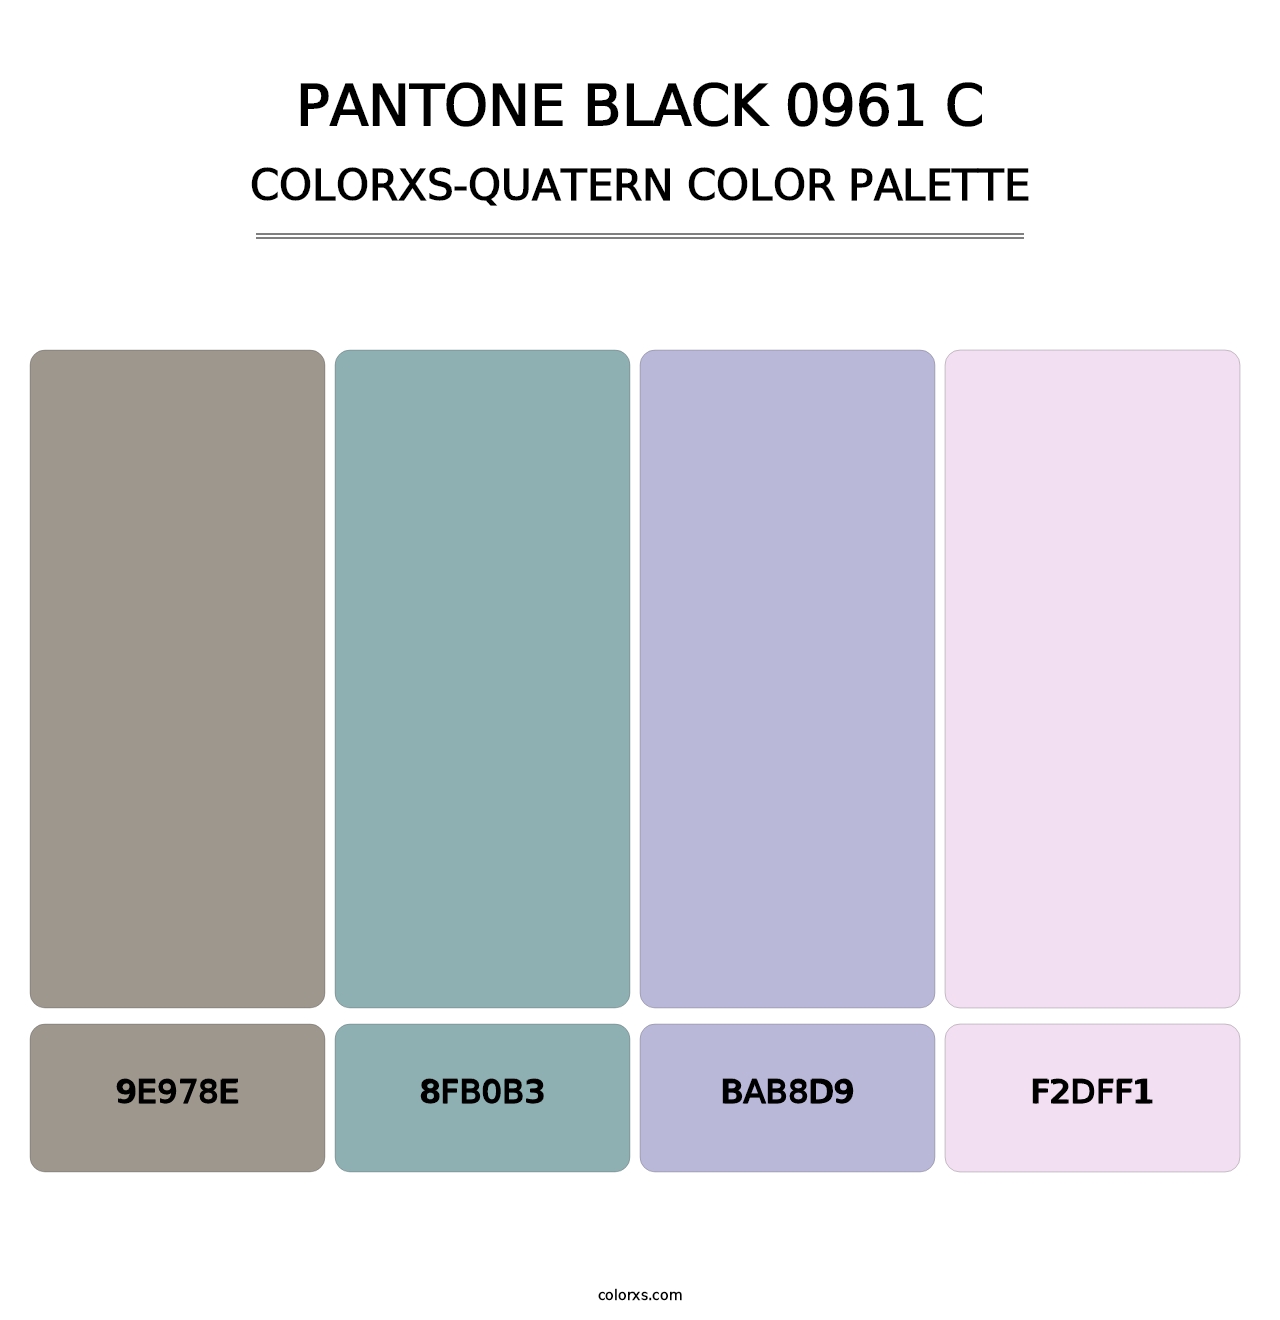 PANTONE Black 0961 C - Colorxs Quatern Palette